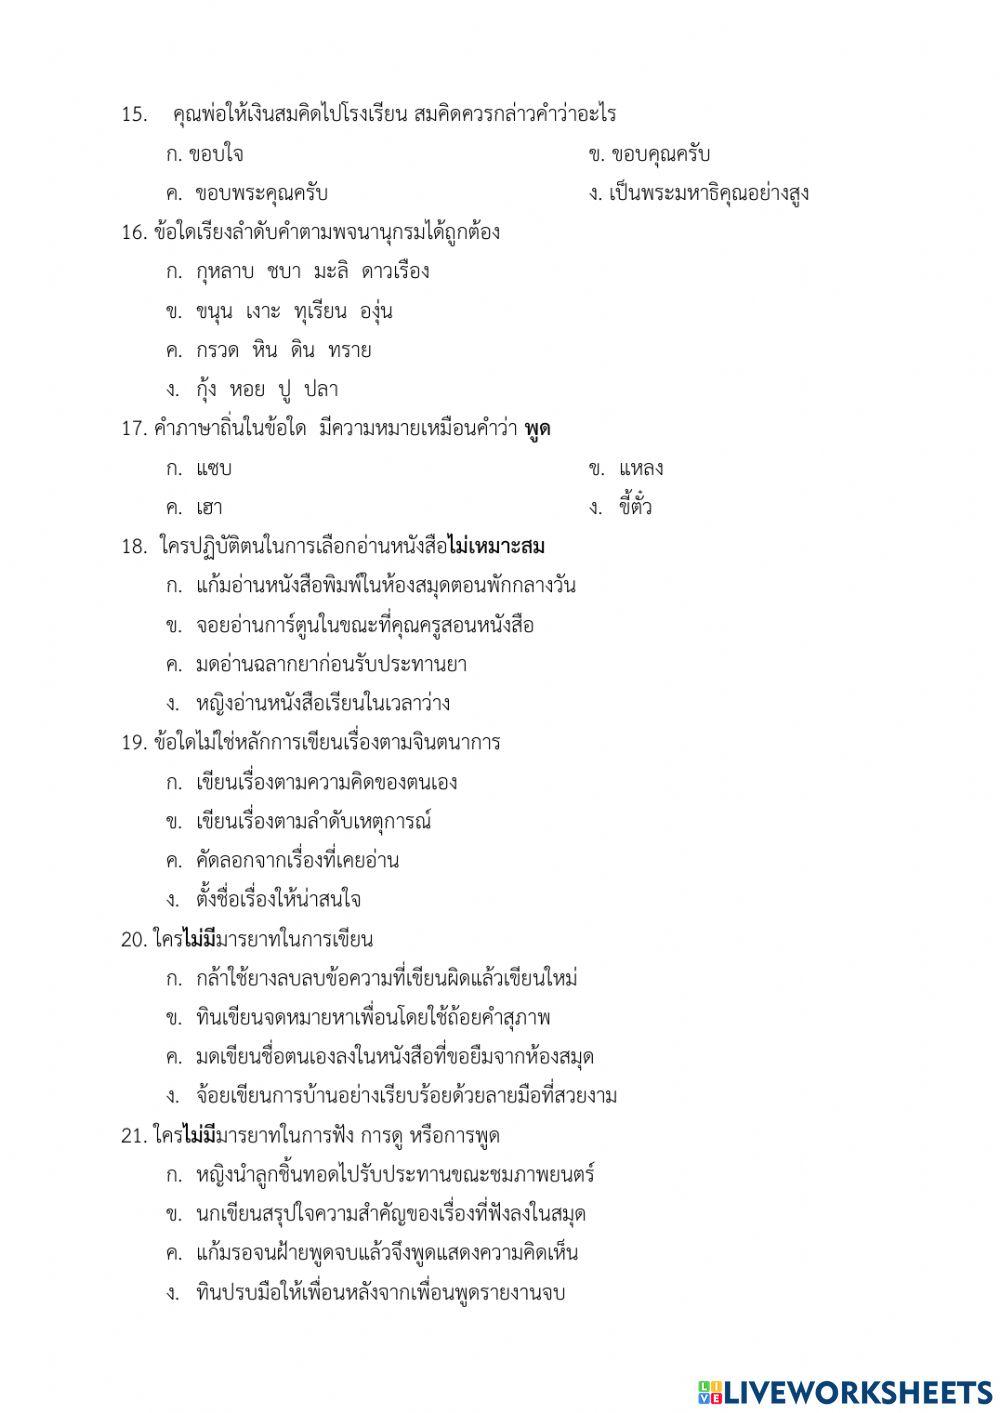 ข้อสอบชาภาษาไทย